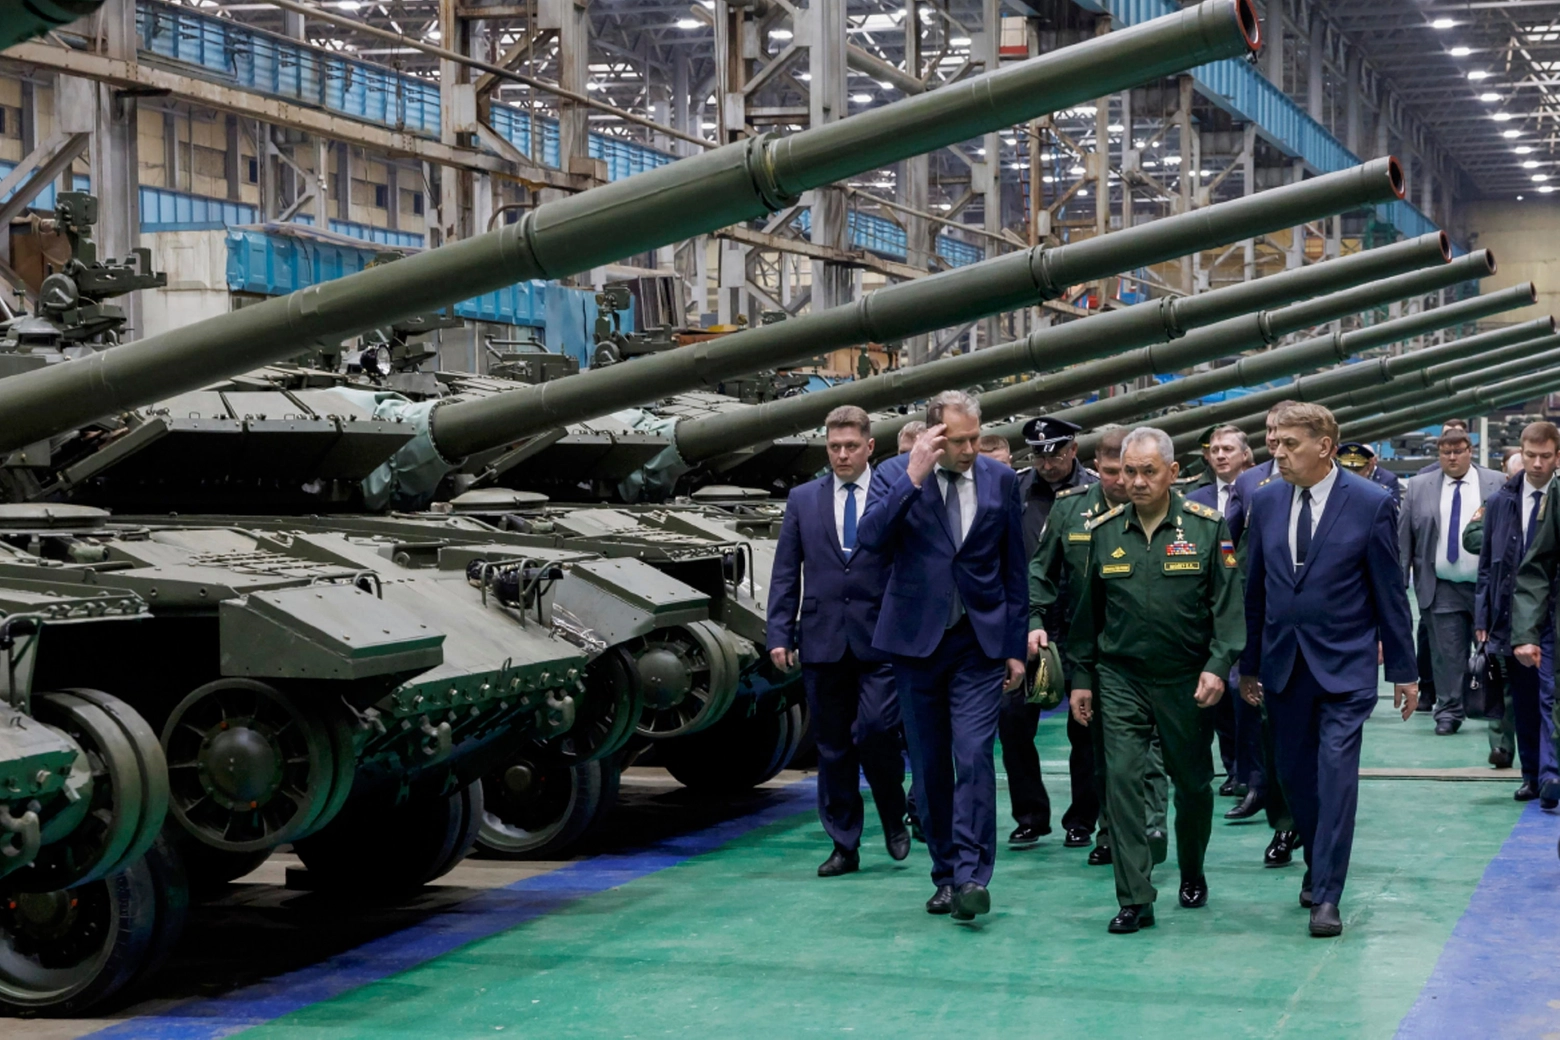 Il ministro della Difesa Sergei Shoigu in visita in una fabbrica di armi